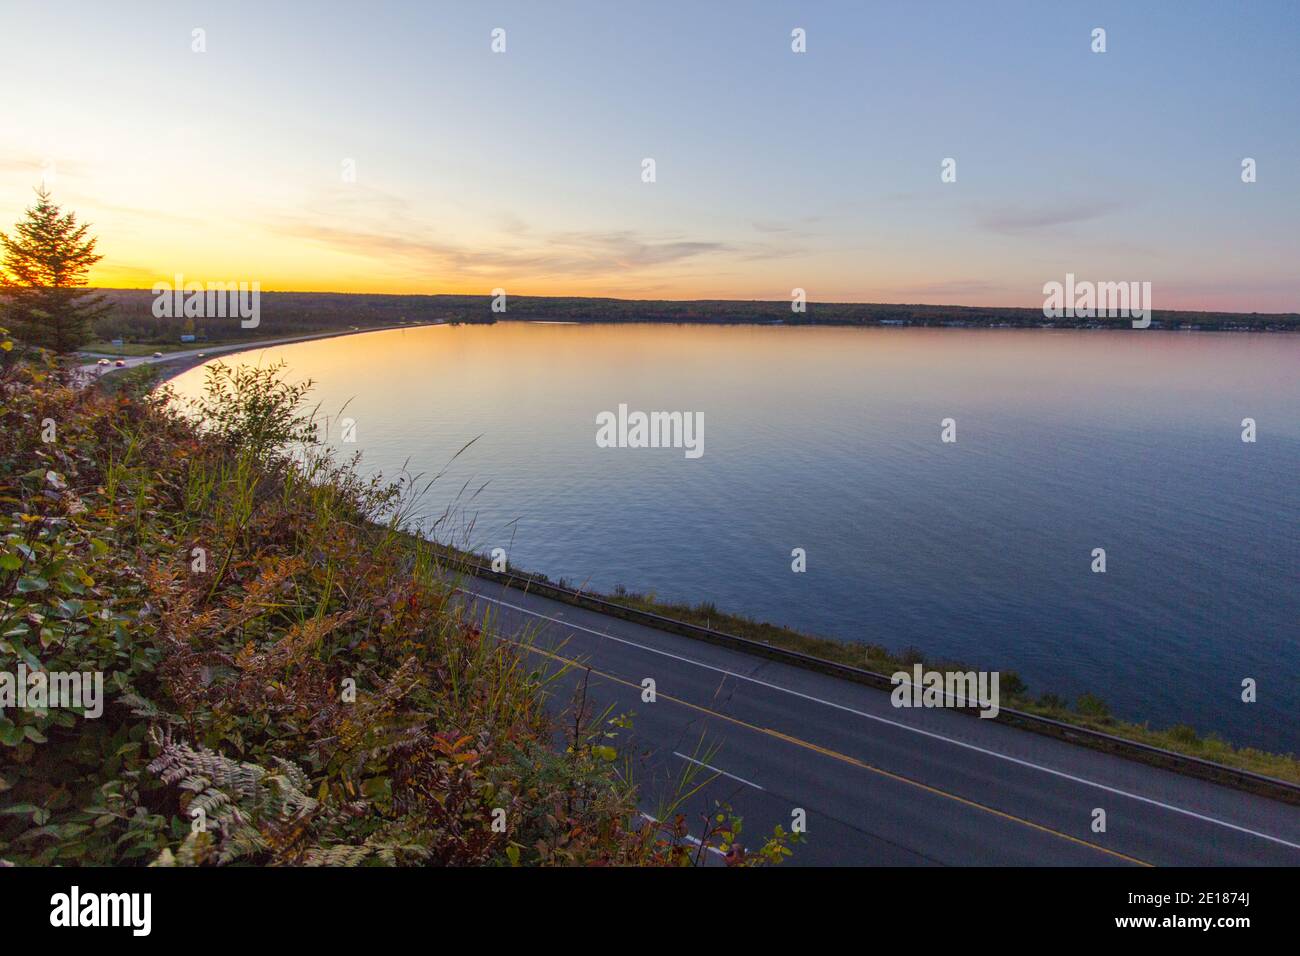 Michigan Scenic Drive. Autostrada costiera lungo la Keweenaw Bay del lago Superior al tramonto nella penisola superiore del Michigan. Foto Stock